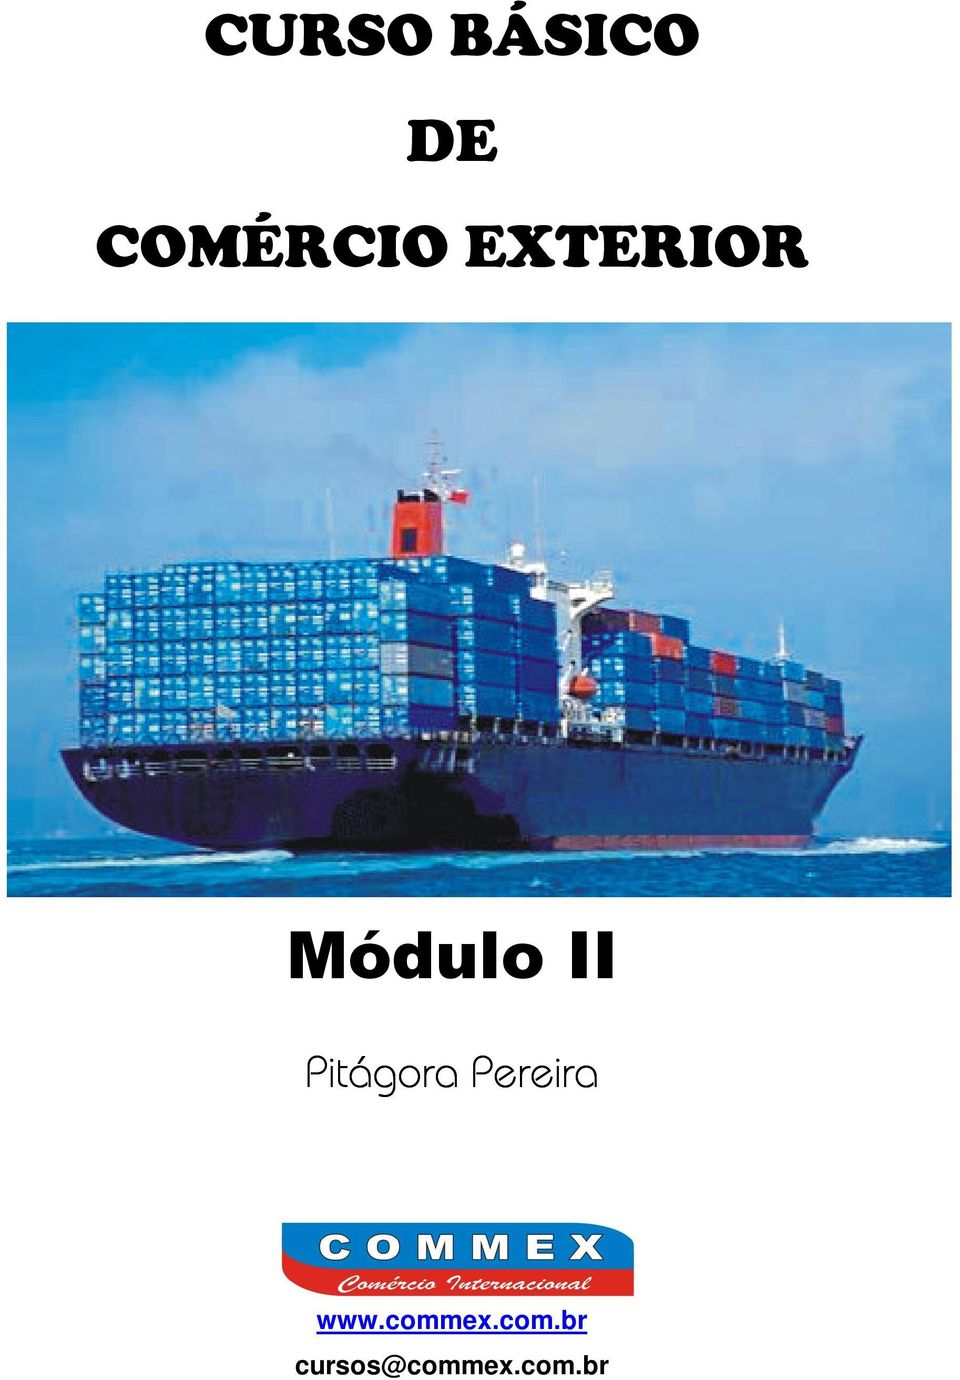 Módulo II www.commex.